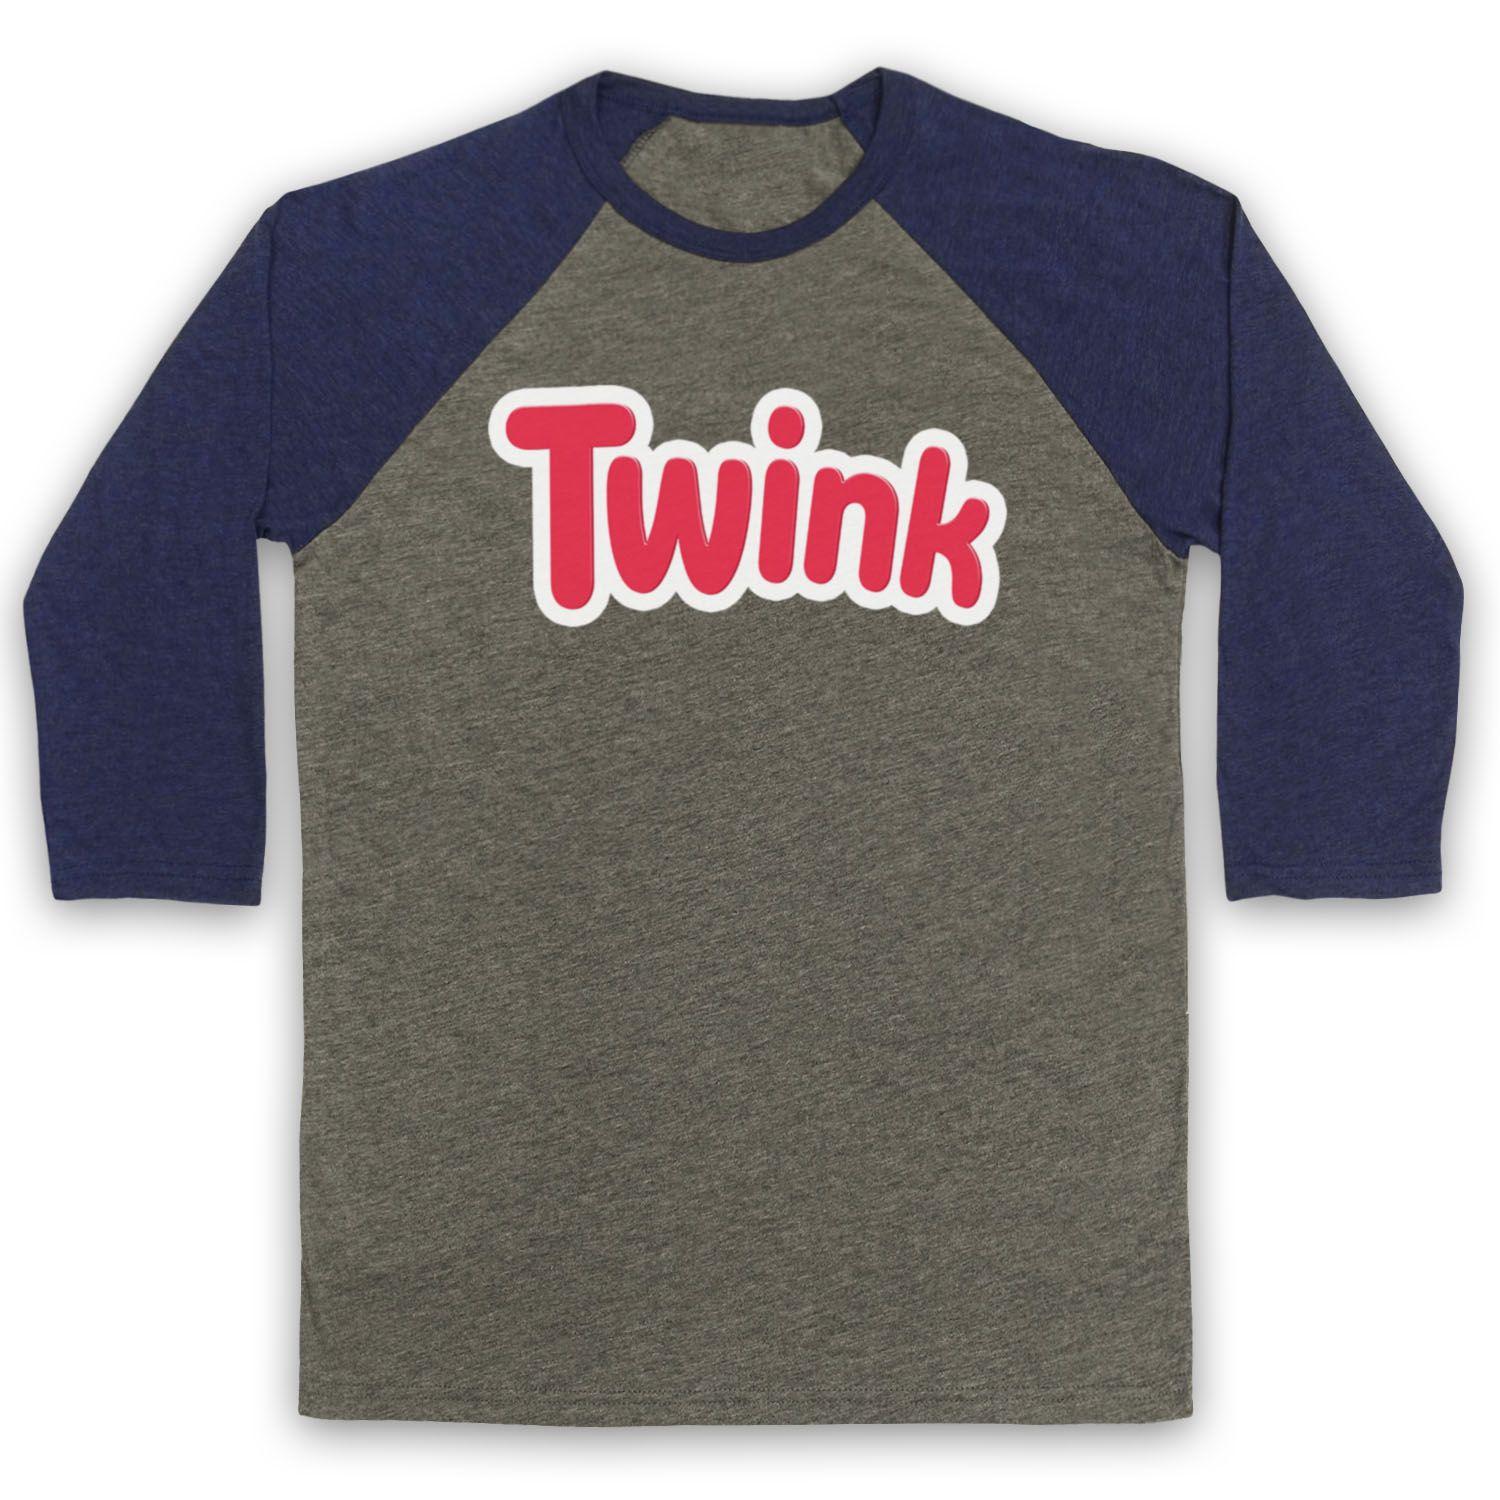 Twinkie Logo - TWINK TWINKIE LOGO PARODY GAY HUMOUR LGBT RIGHTS PRIDE UNISEX 3/4 ...